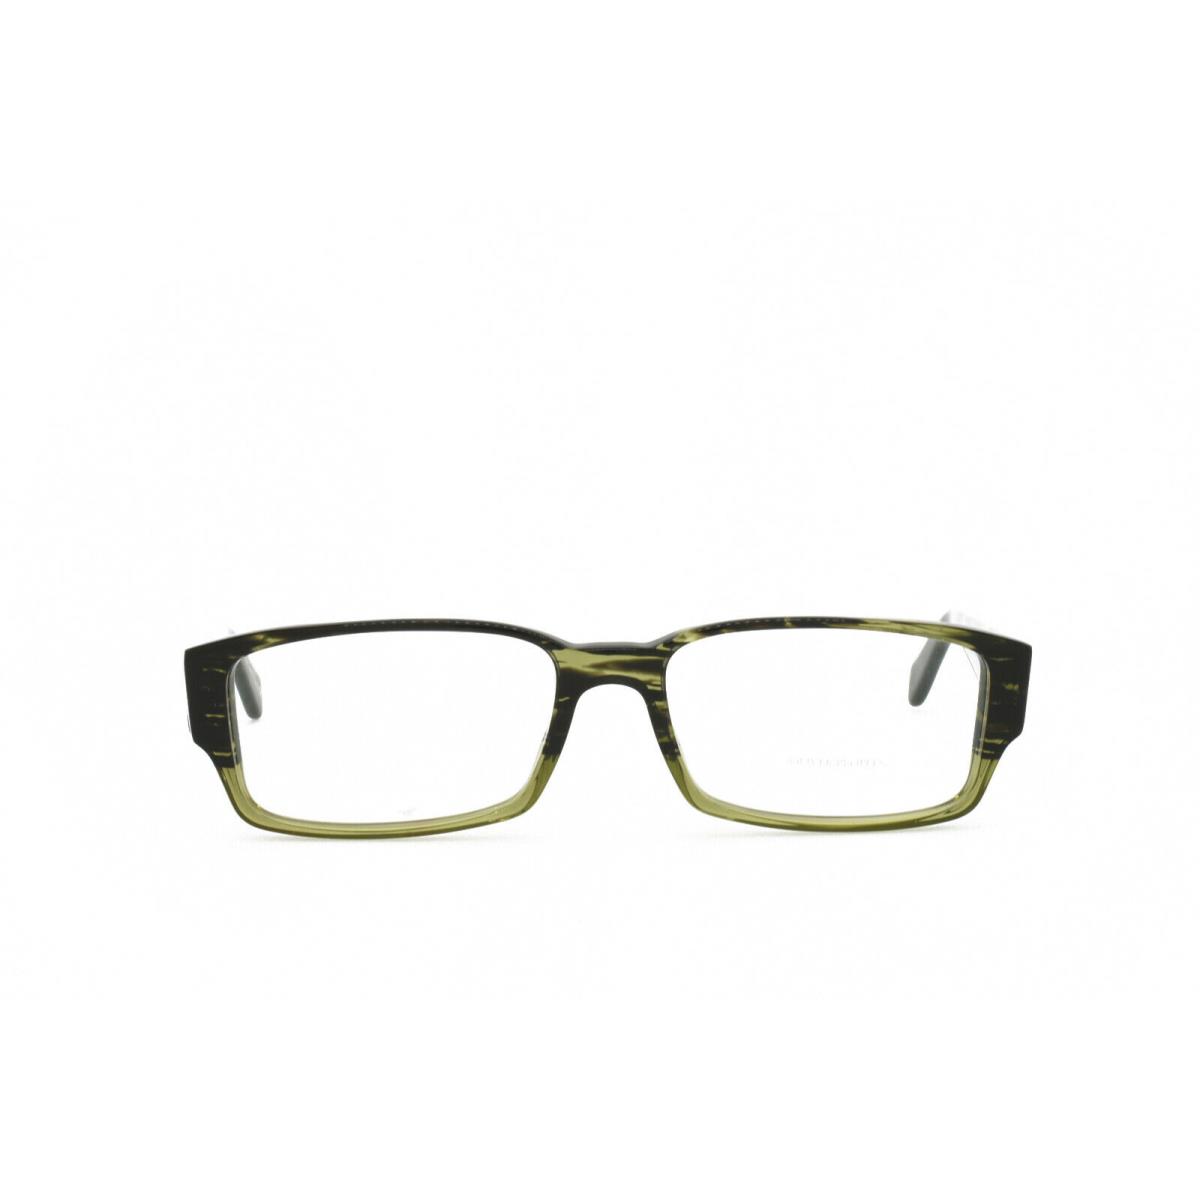 Oliver Peoples Mackaye 5103 1052 Eyeglasses Frames Only 54-16-140